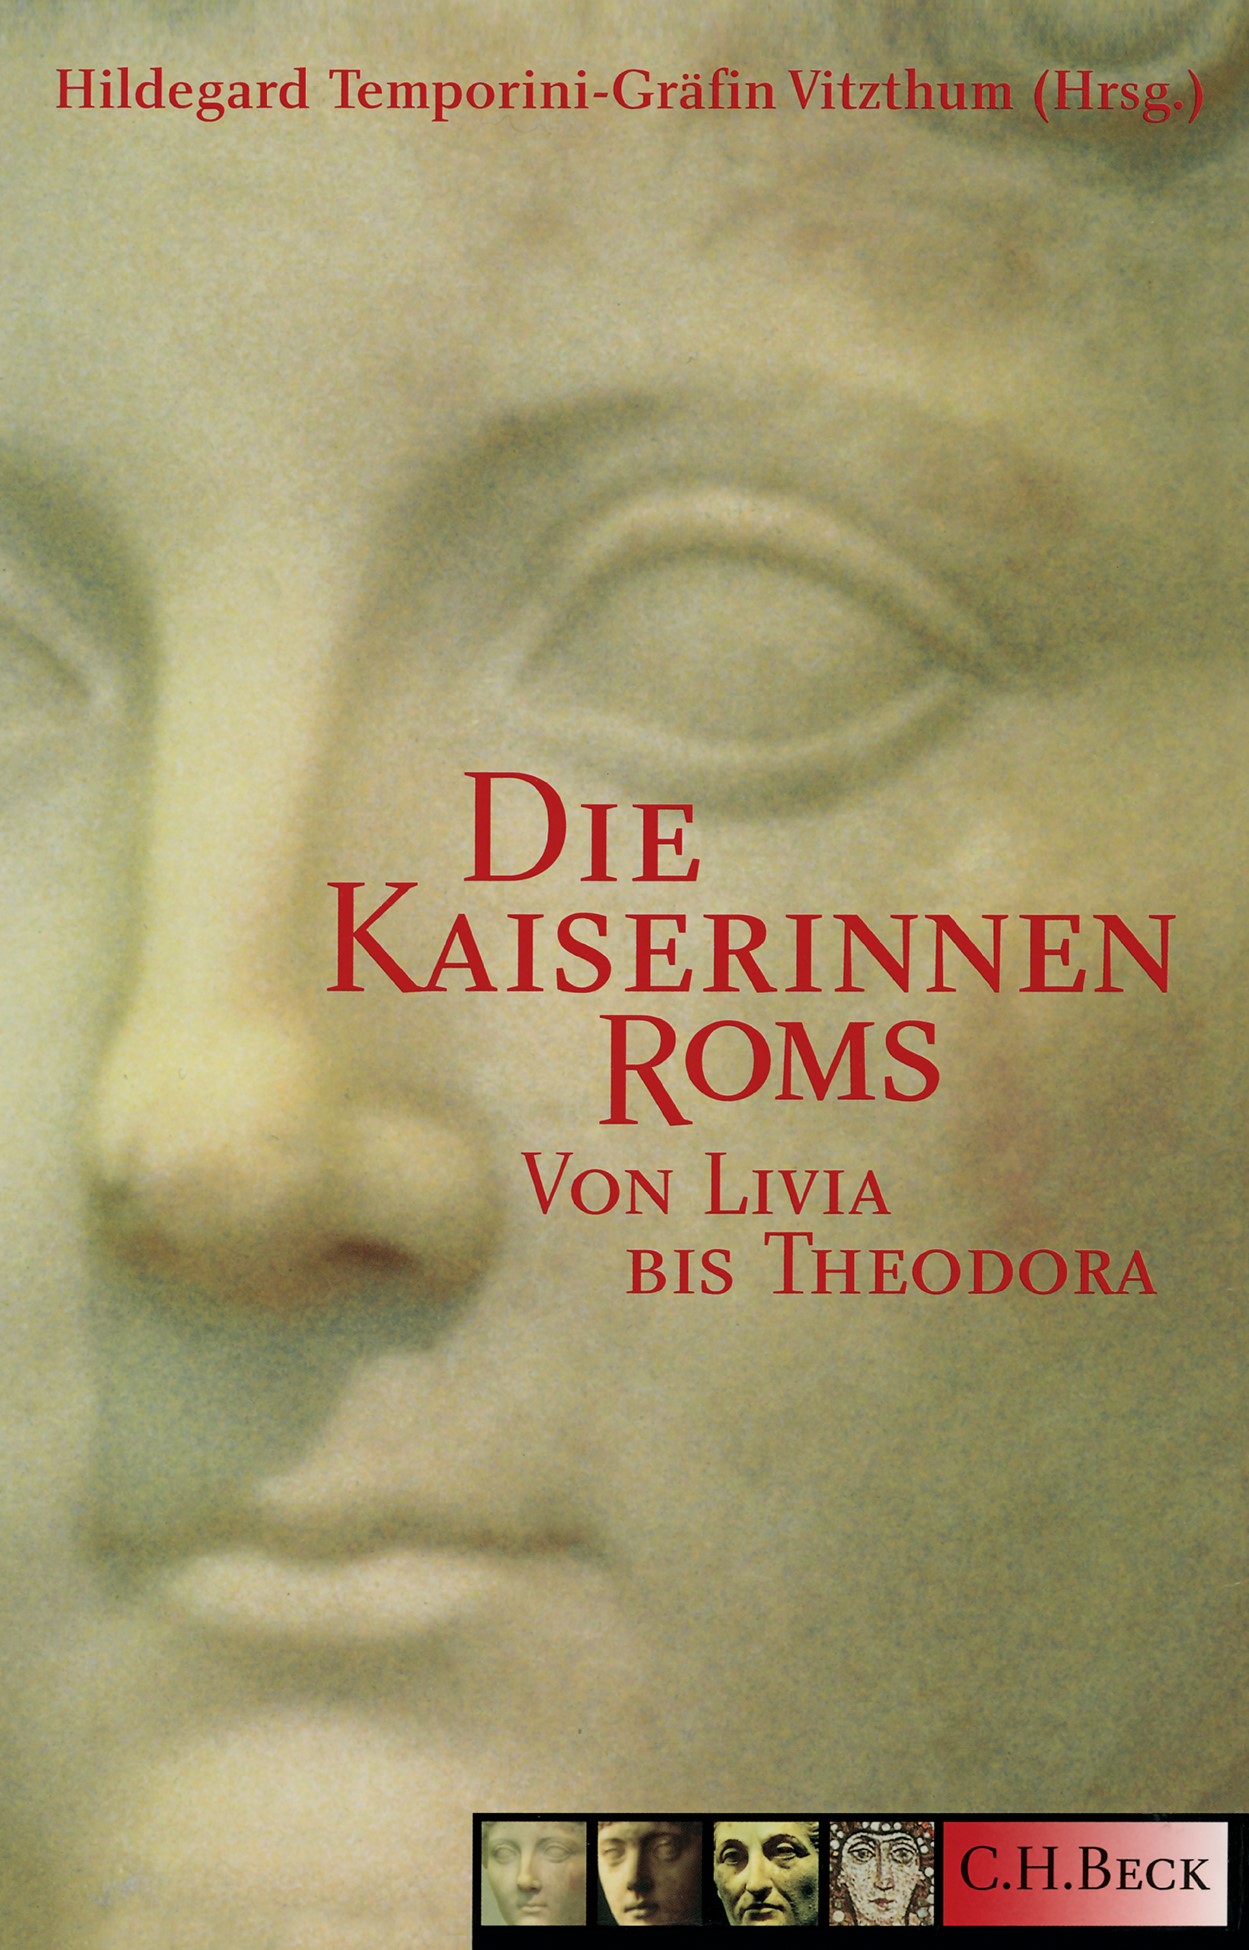 Cover: Temporini-Gräfin Vitzthum, Hildegard, Die Kaiserinnen Roms